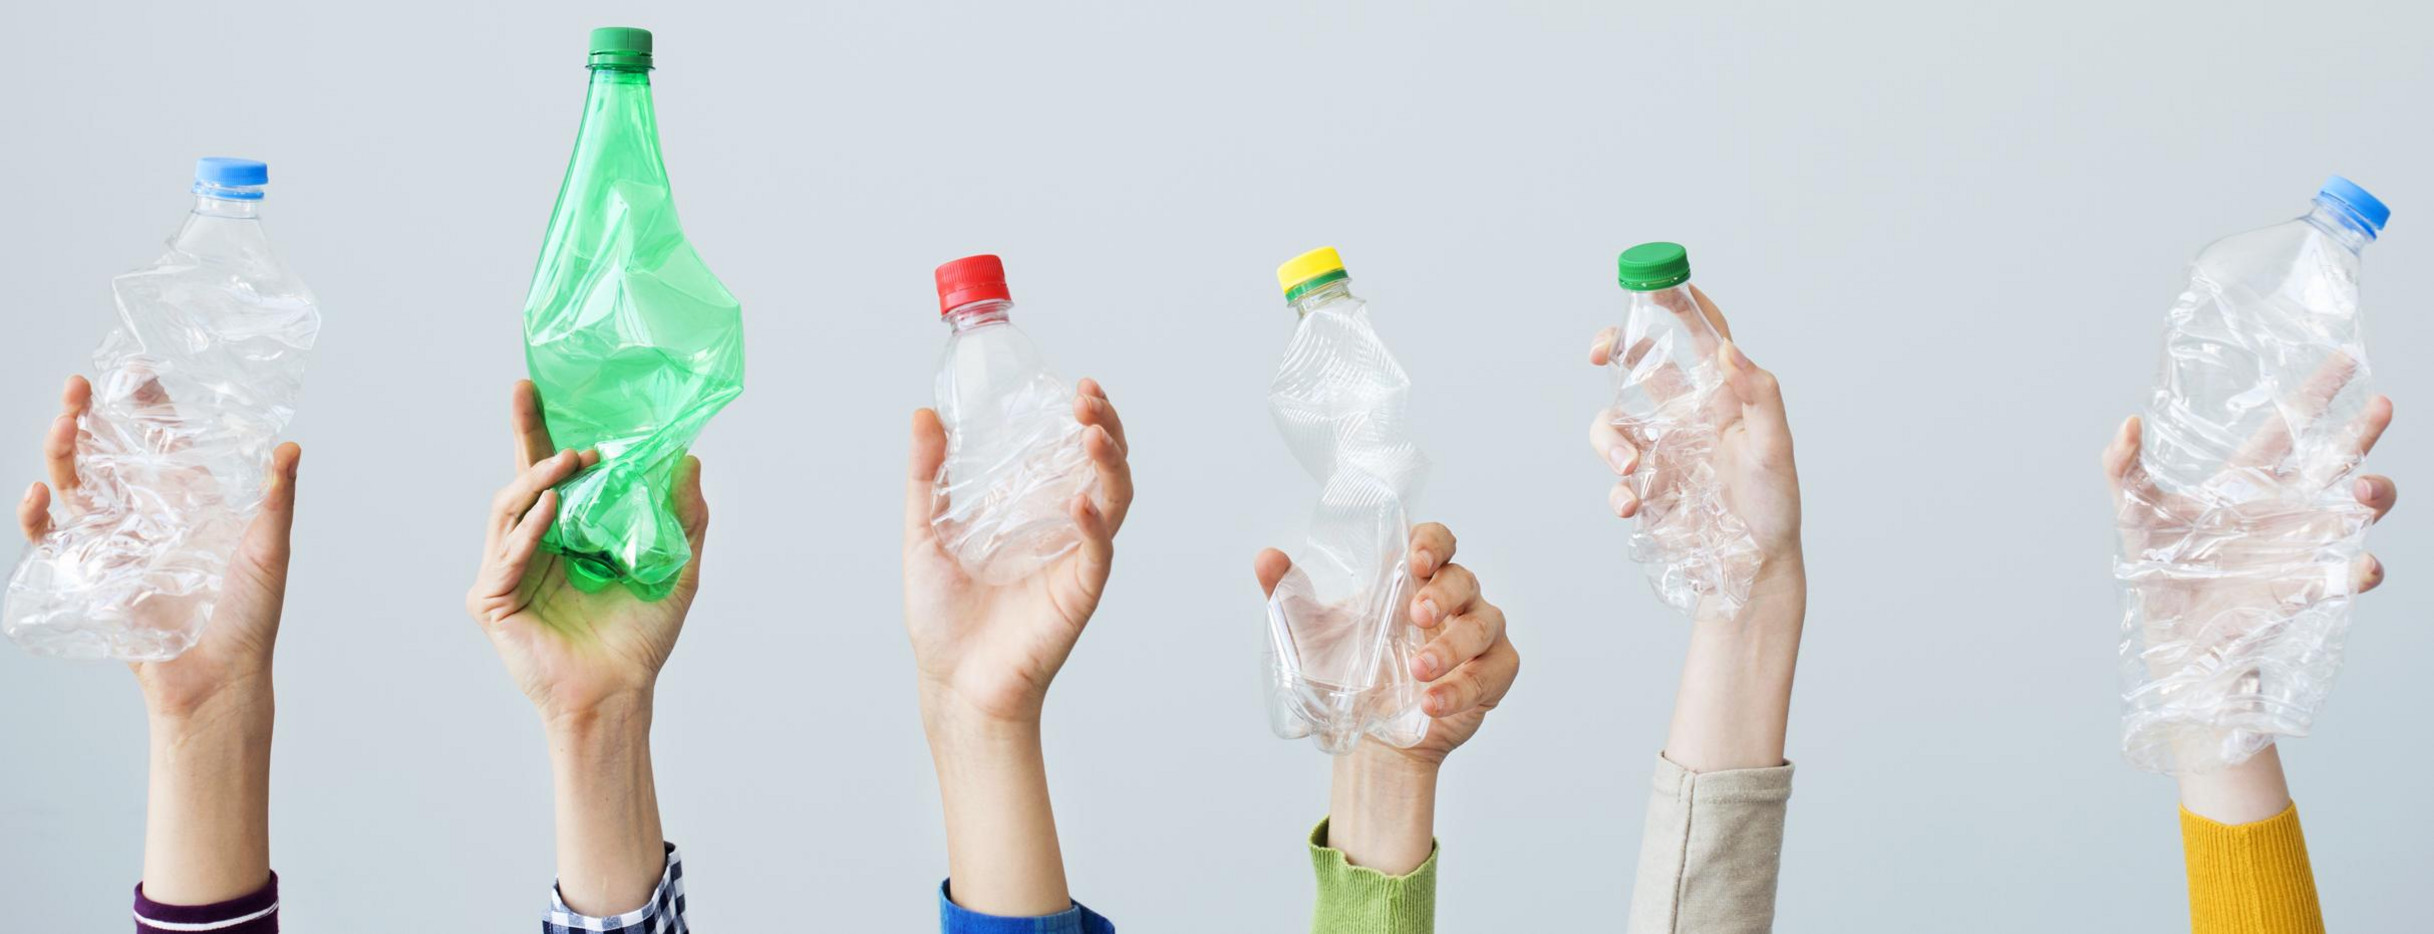 Hände halten Plastikflaschen